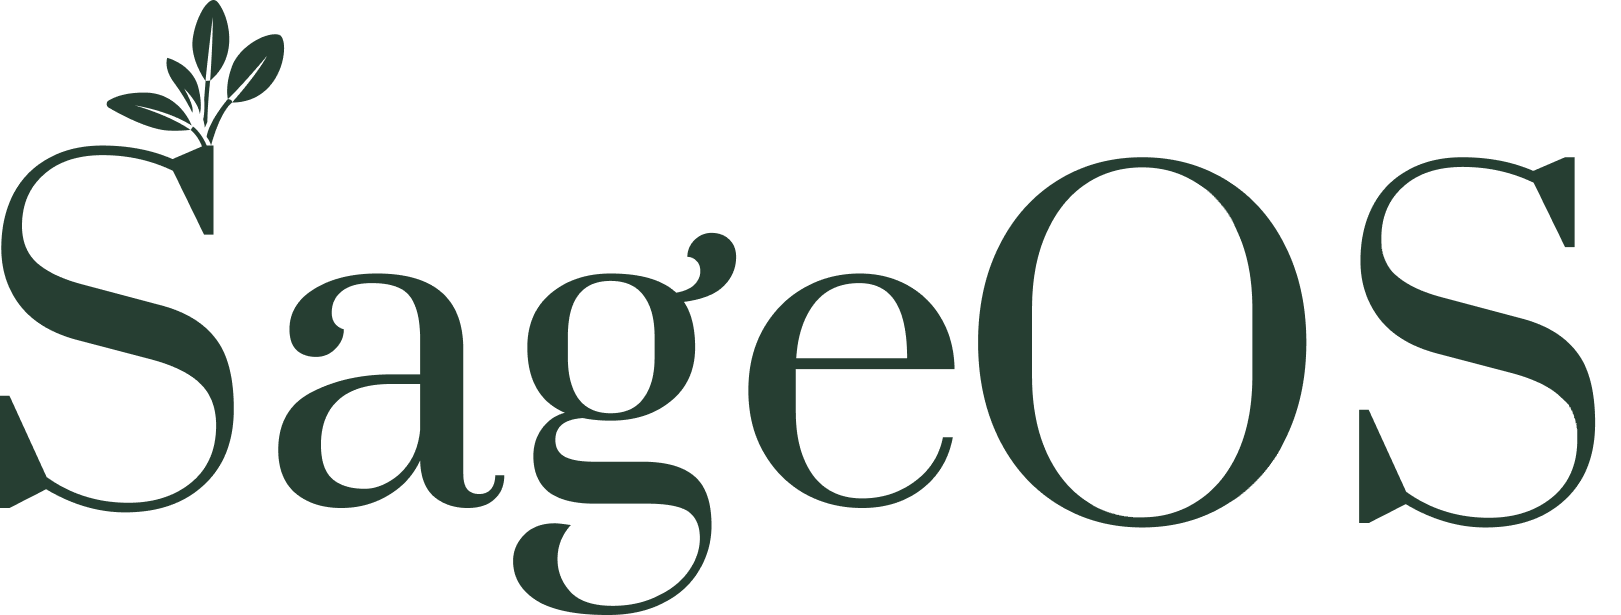 SageOS logo